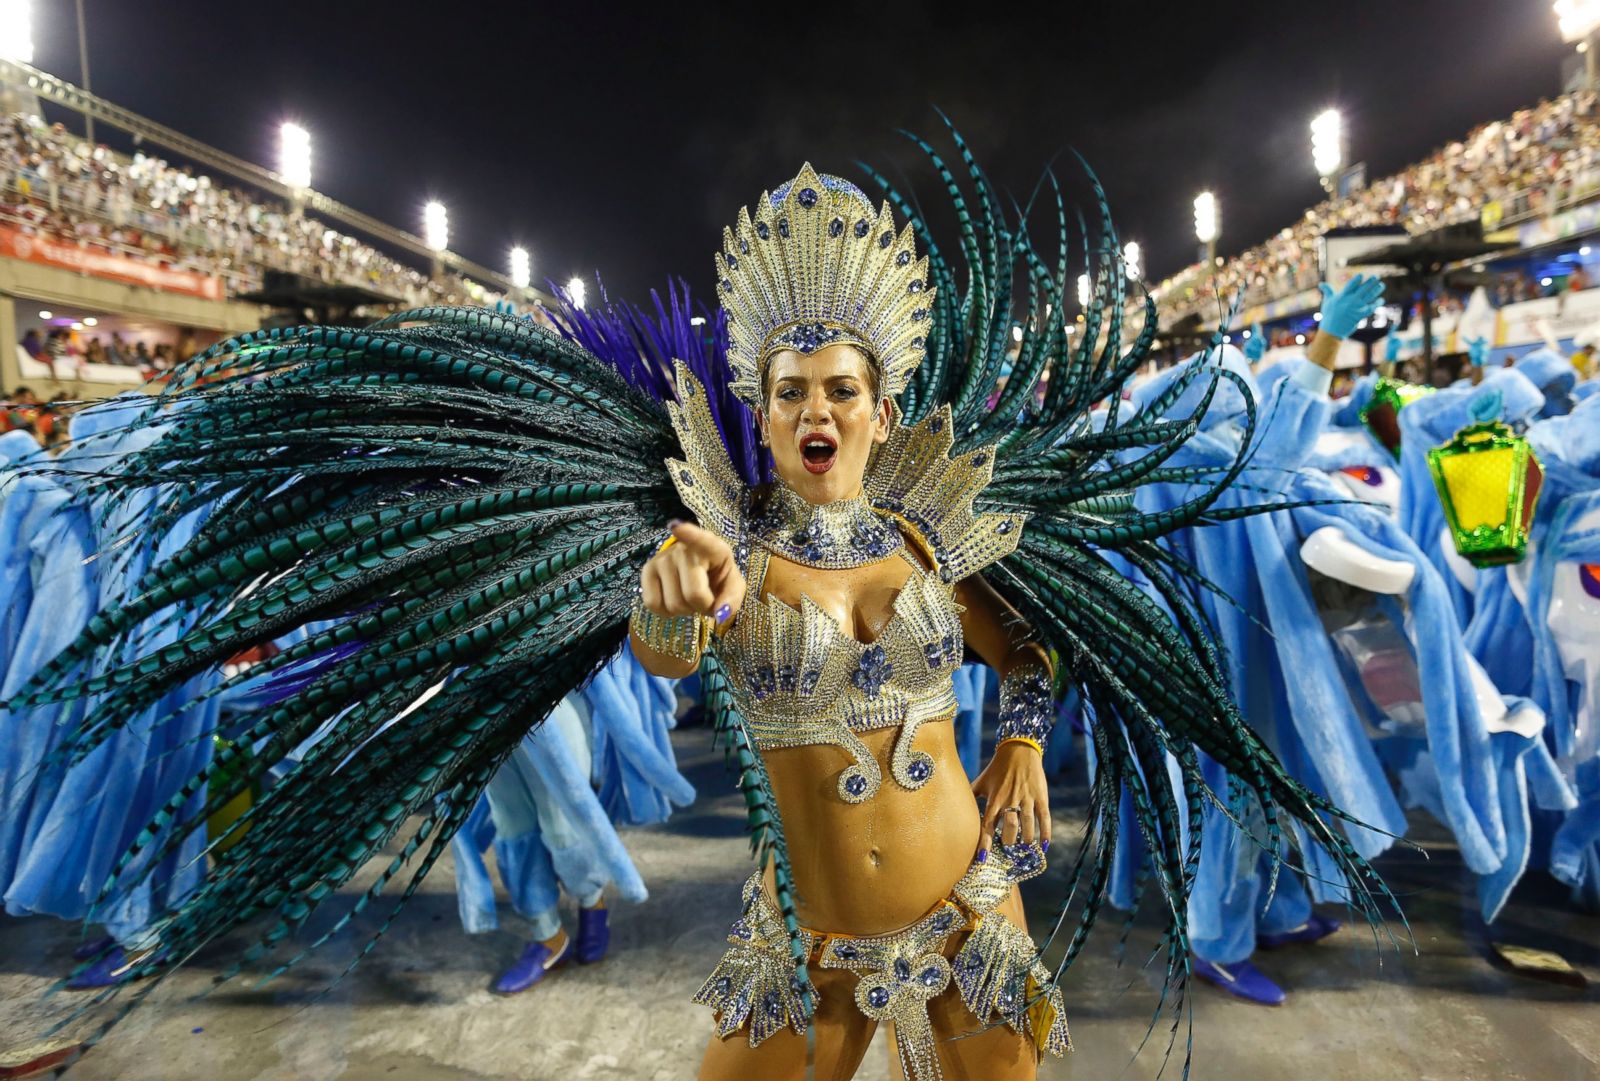 Βραζιλία: Βασίλισσα του Καρναβαλιού «χάνει» το εσώρουχό της αλλά συνεχίζει απτόητη! (βίντεο)